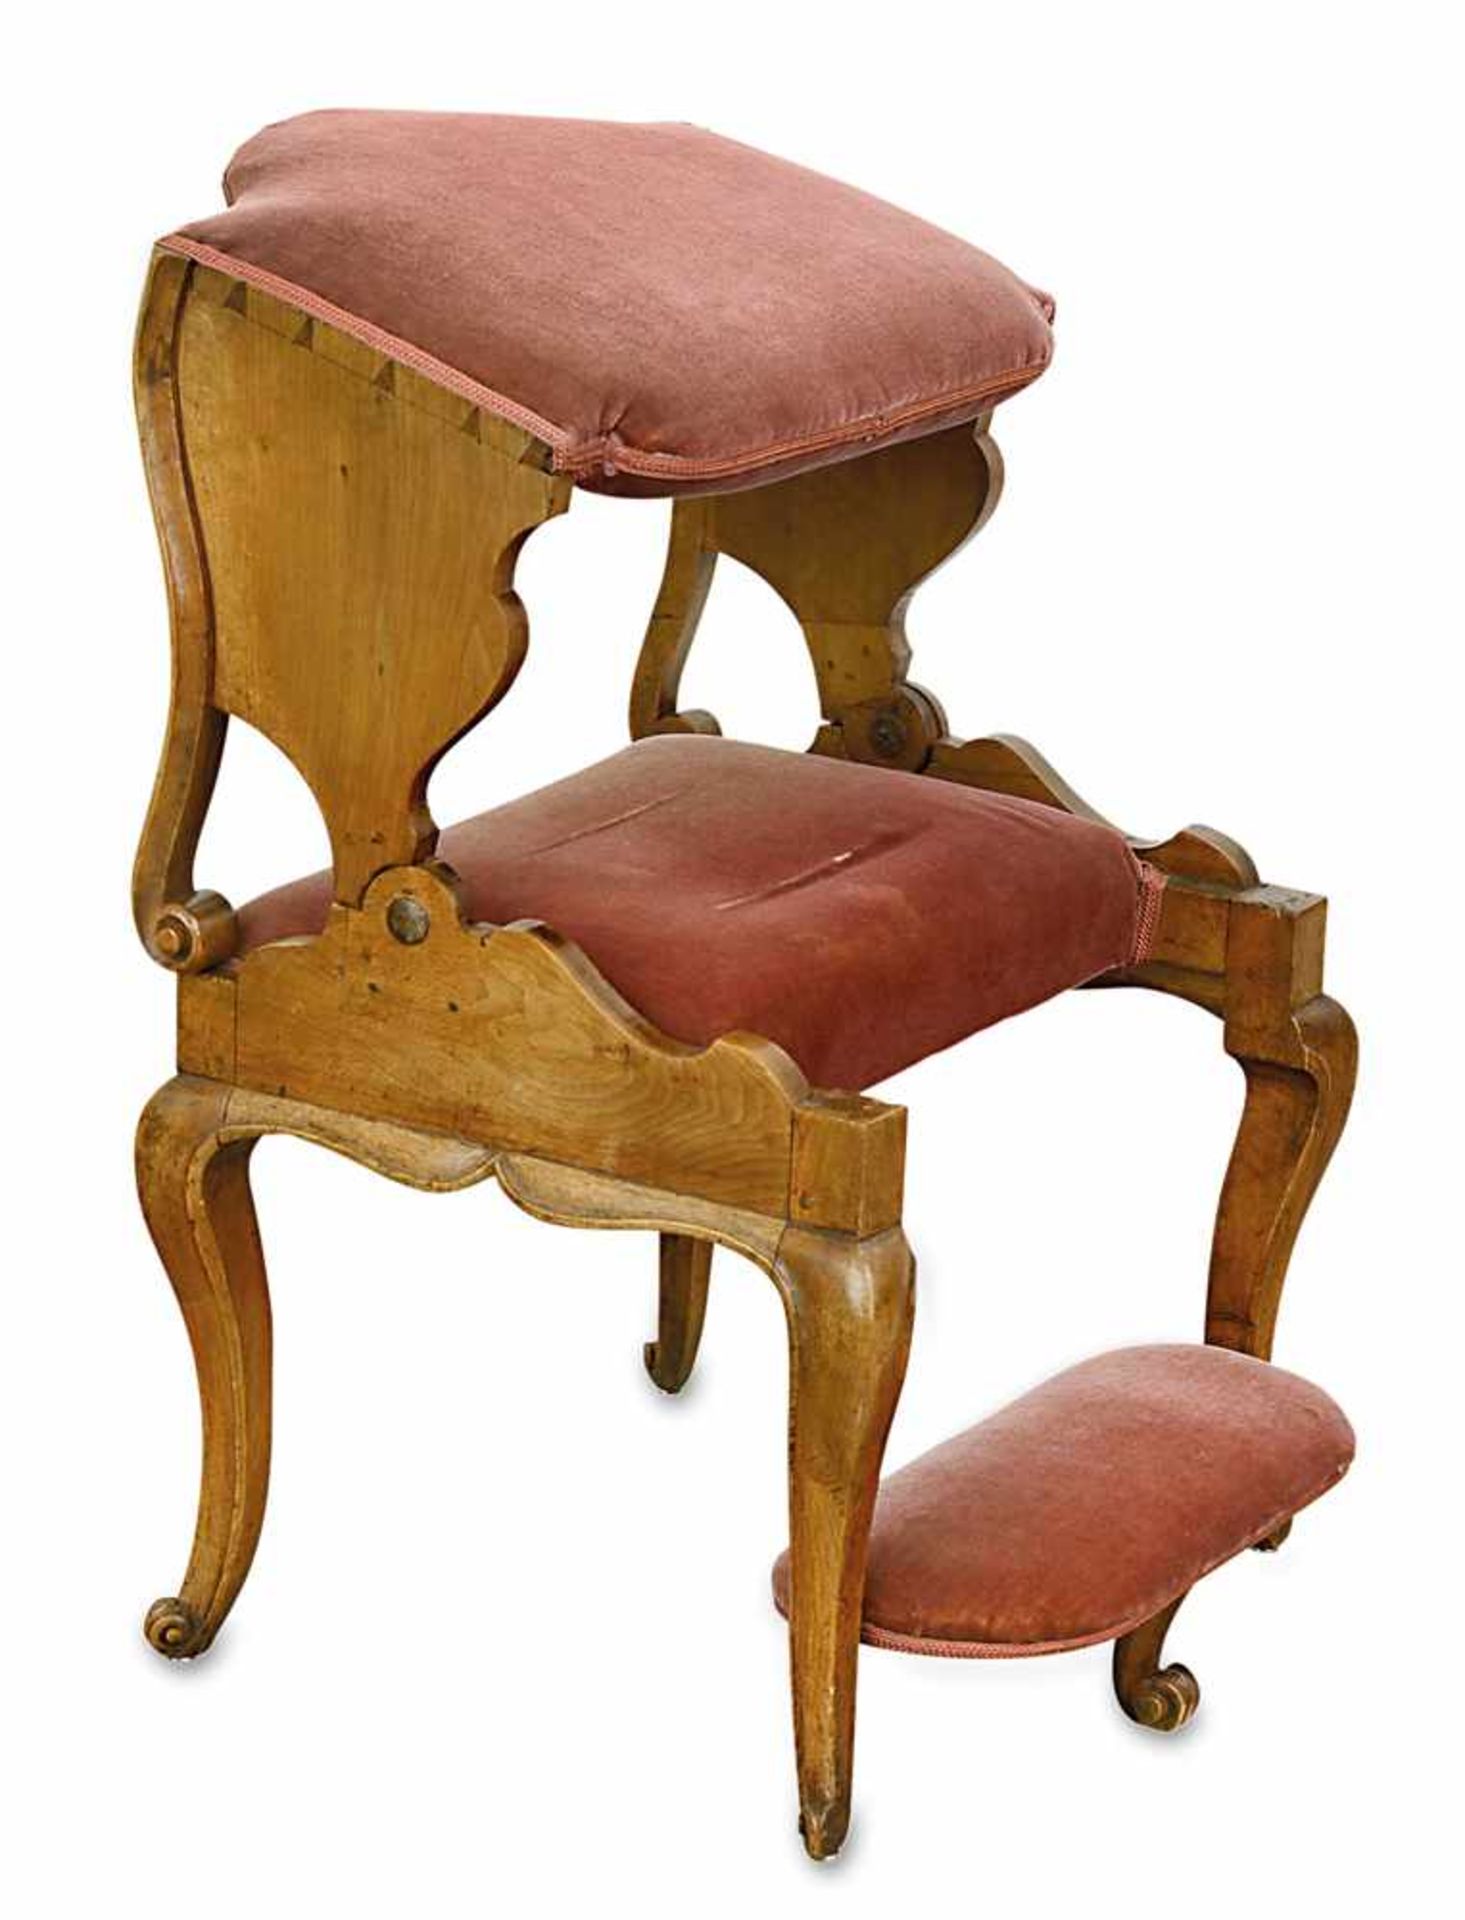 Armlehnstuhl (Betstuhl) Barockstil Nussholz, roter Samt. Über gebogten Beinen und geschweifter Zarge